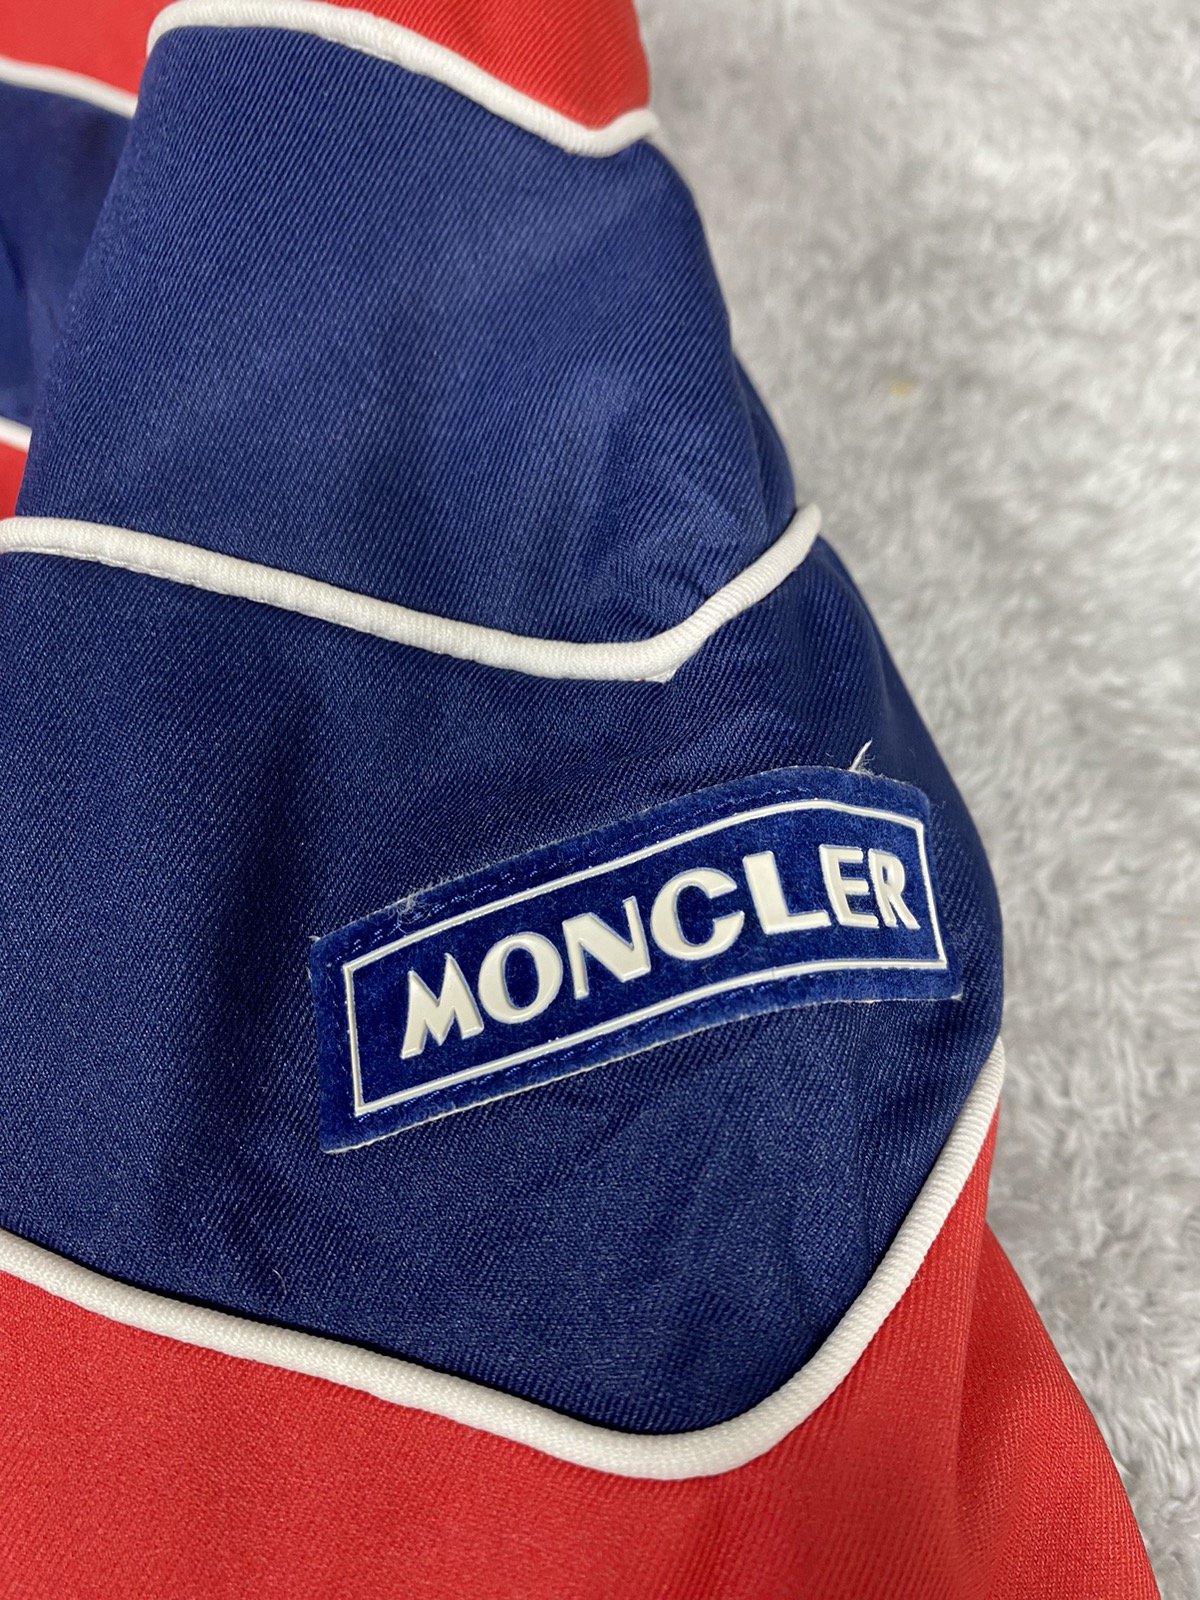 Vintage Moncler Jacket. J011 - 4